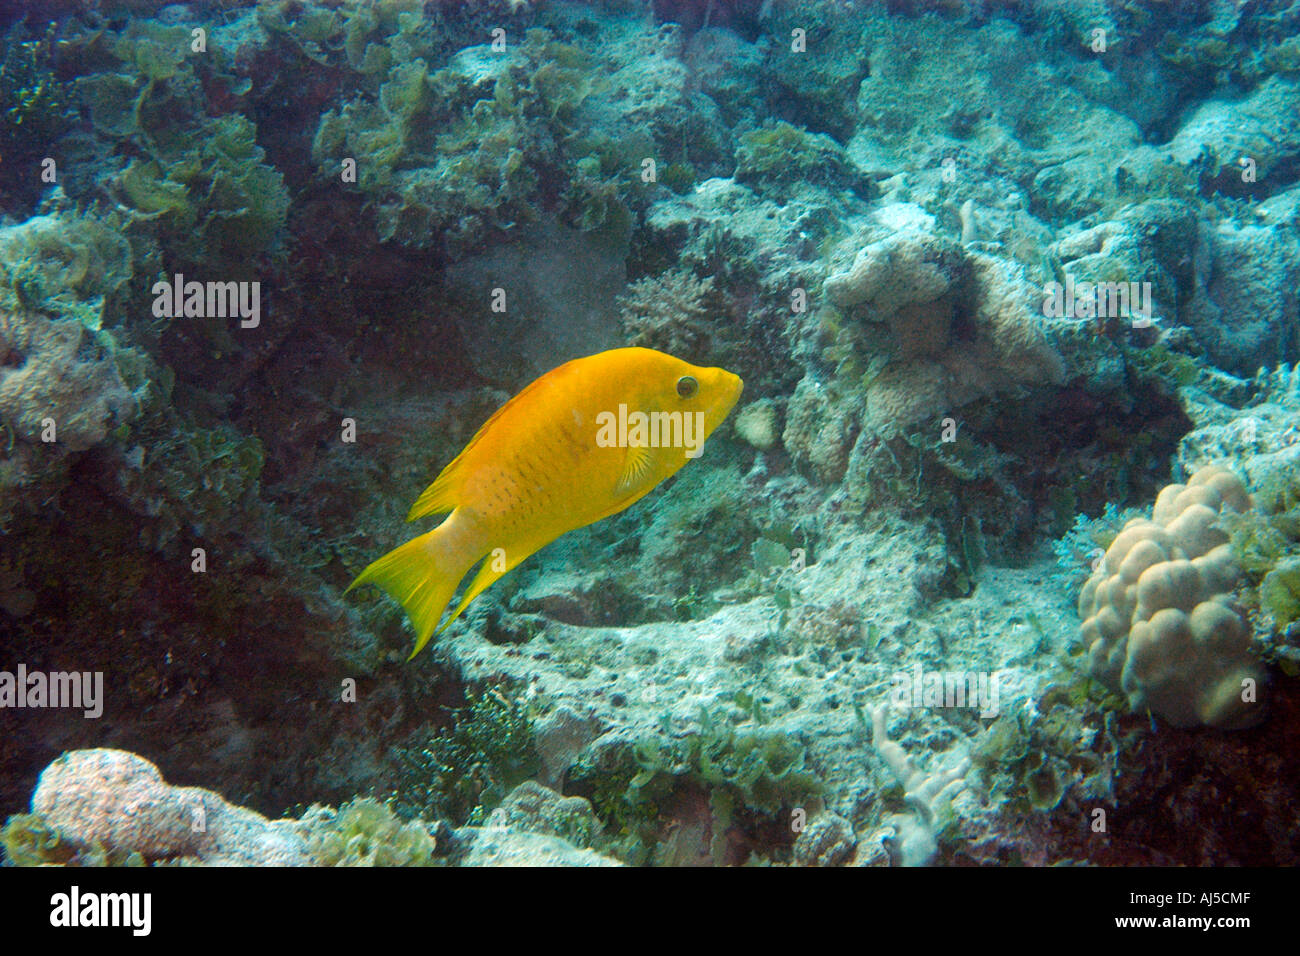 Slingjaw wrasse Epibulus insidiator initial yellow phase Ailuk atoll Marshall Islands Pacific Stock Photo